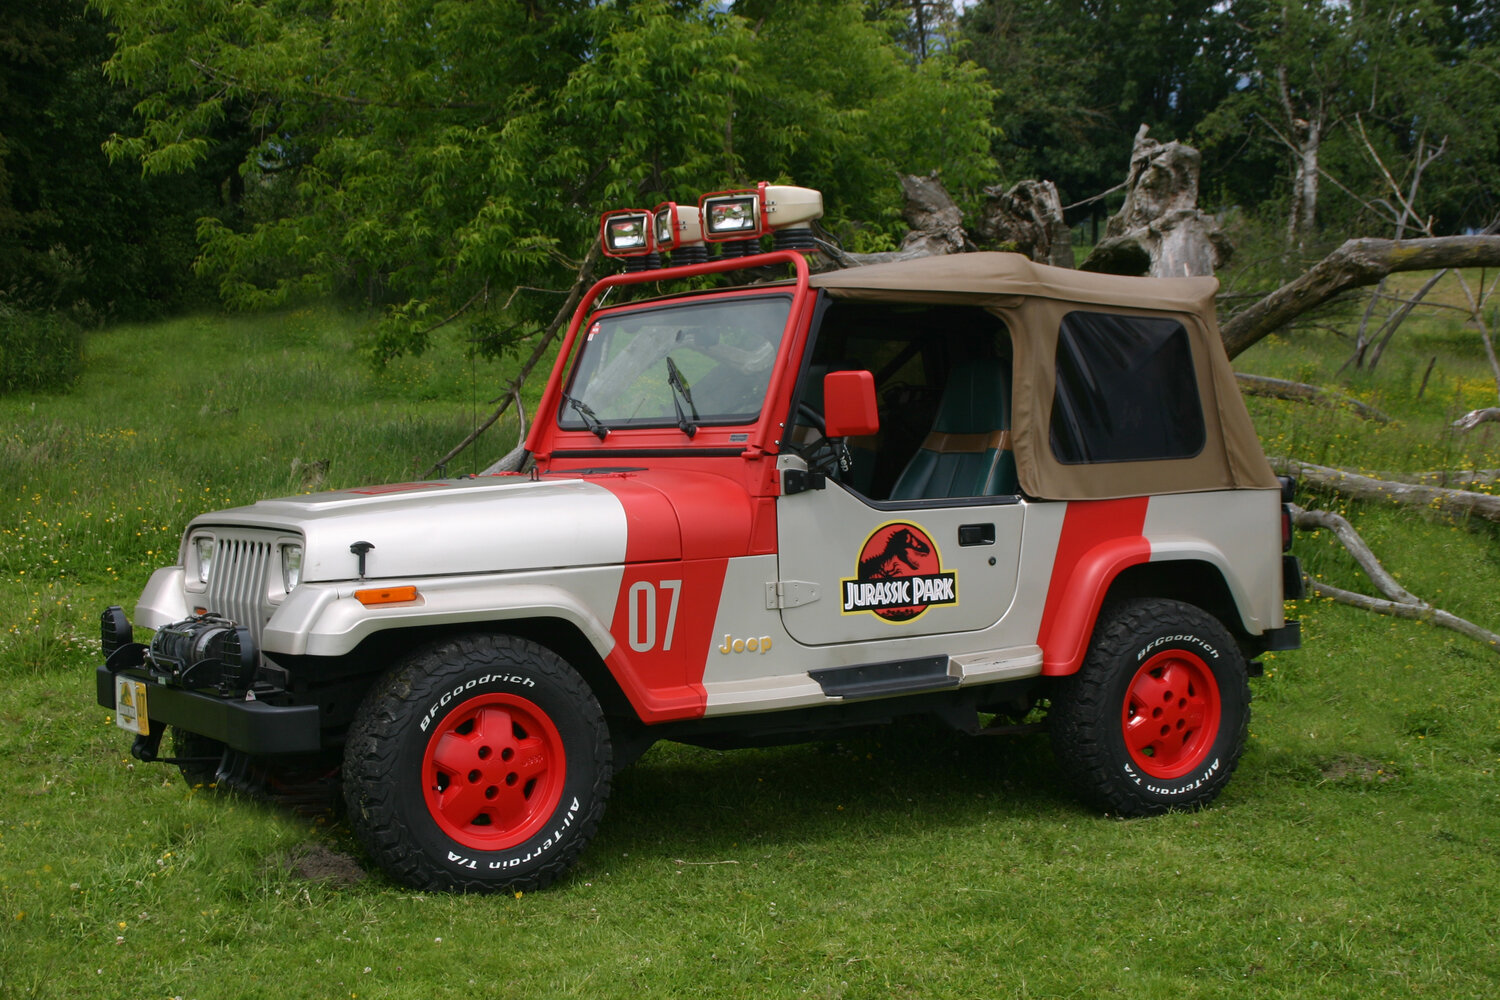 Jurassic Park Jeep — British Columbia DeLorean